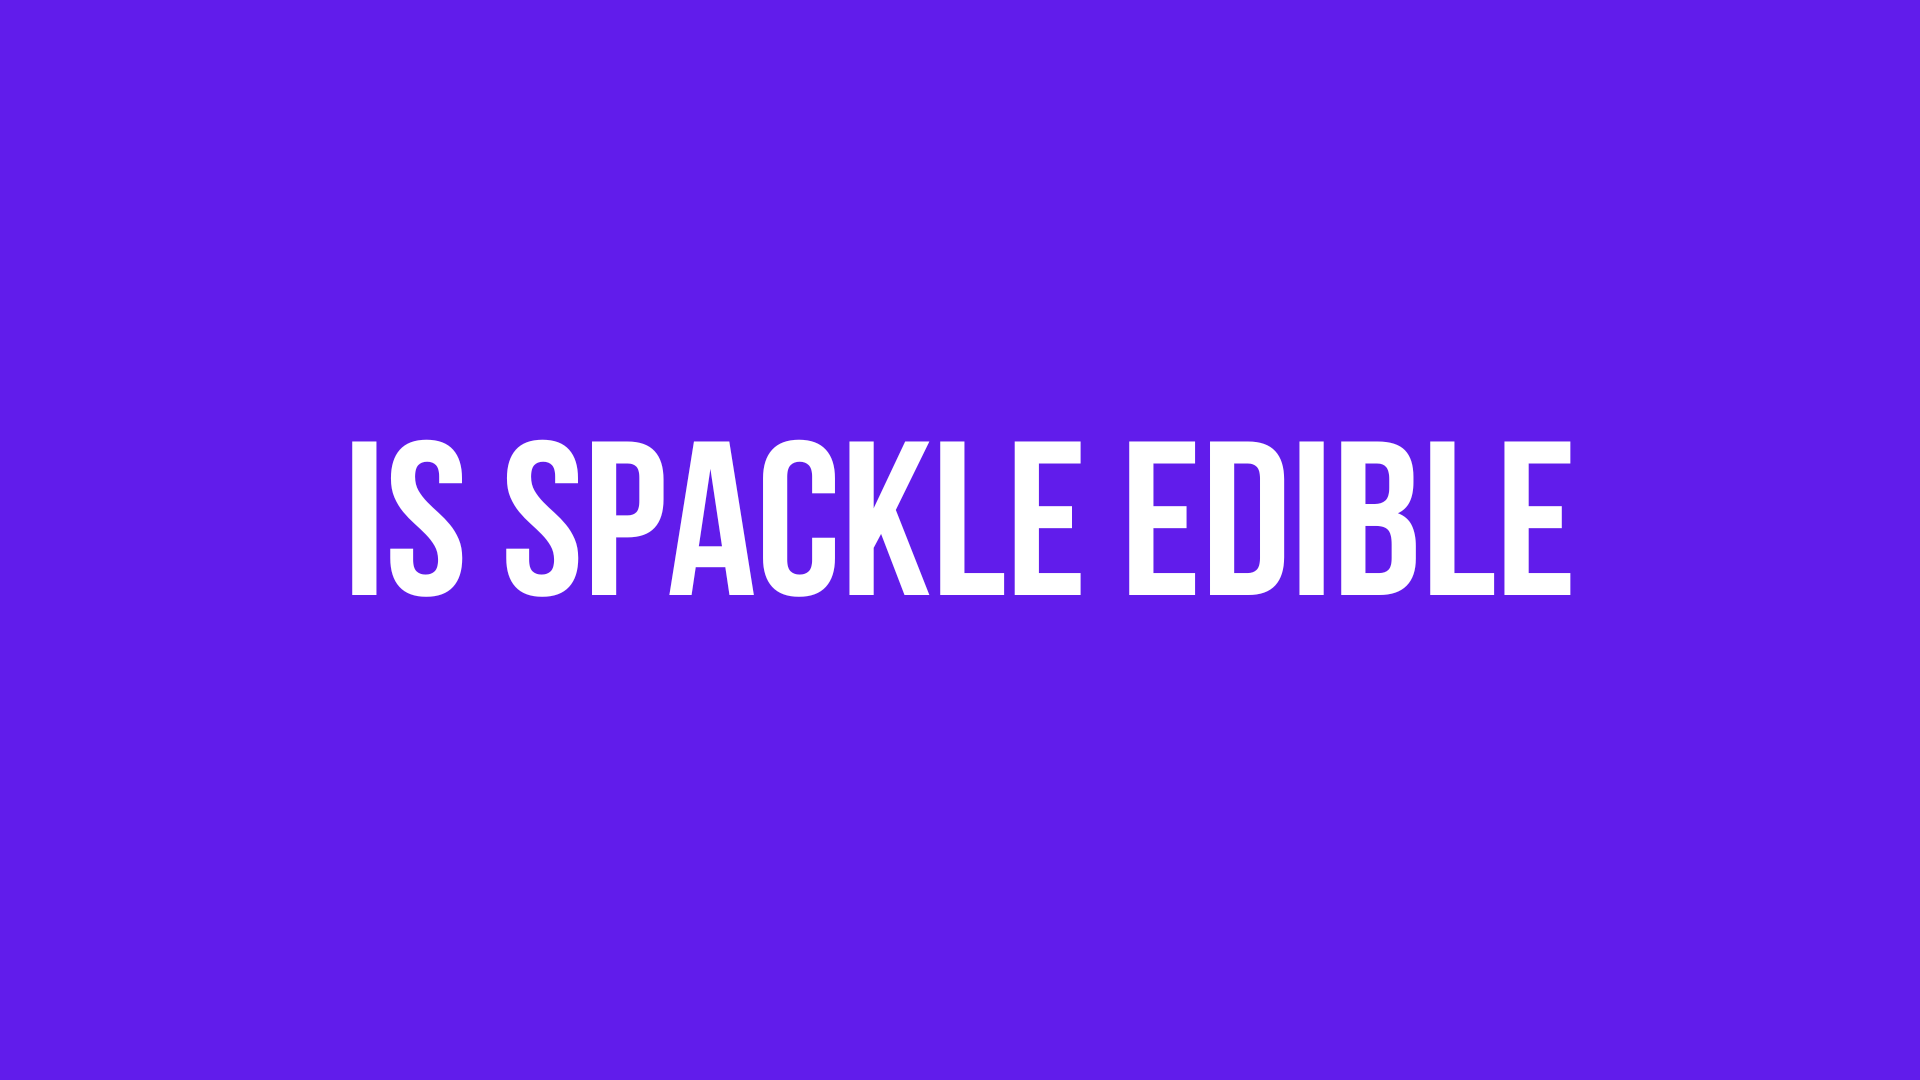 Is Spackle Edible